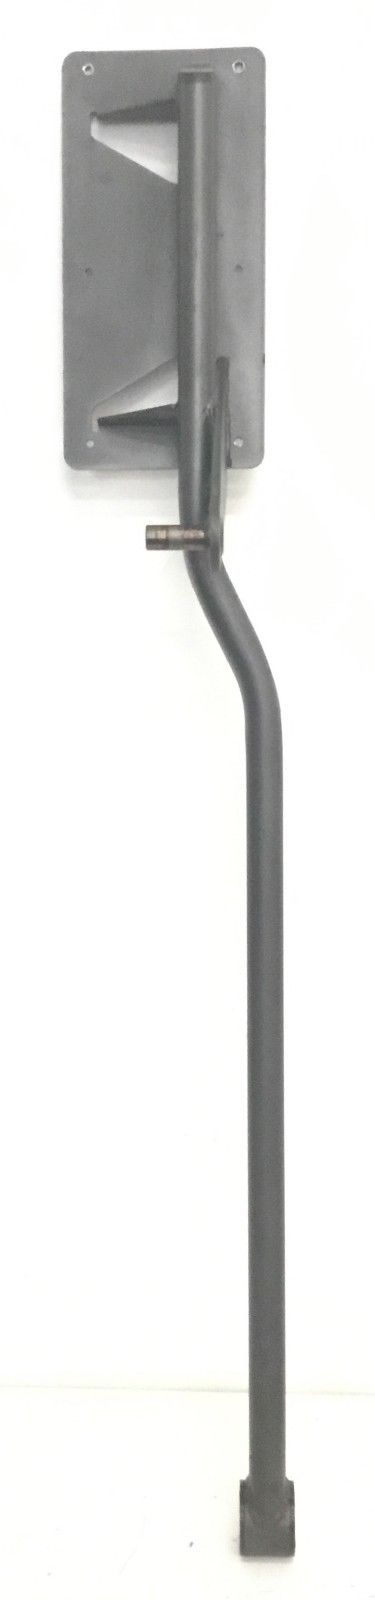 Epic HealthRider NordicTrack Elliptical Left Pedal Arm 291016 - fitnesspartsrepair